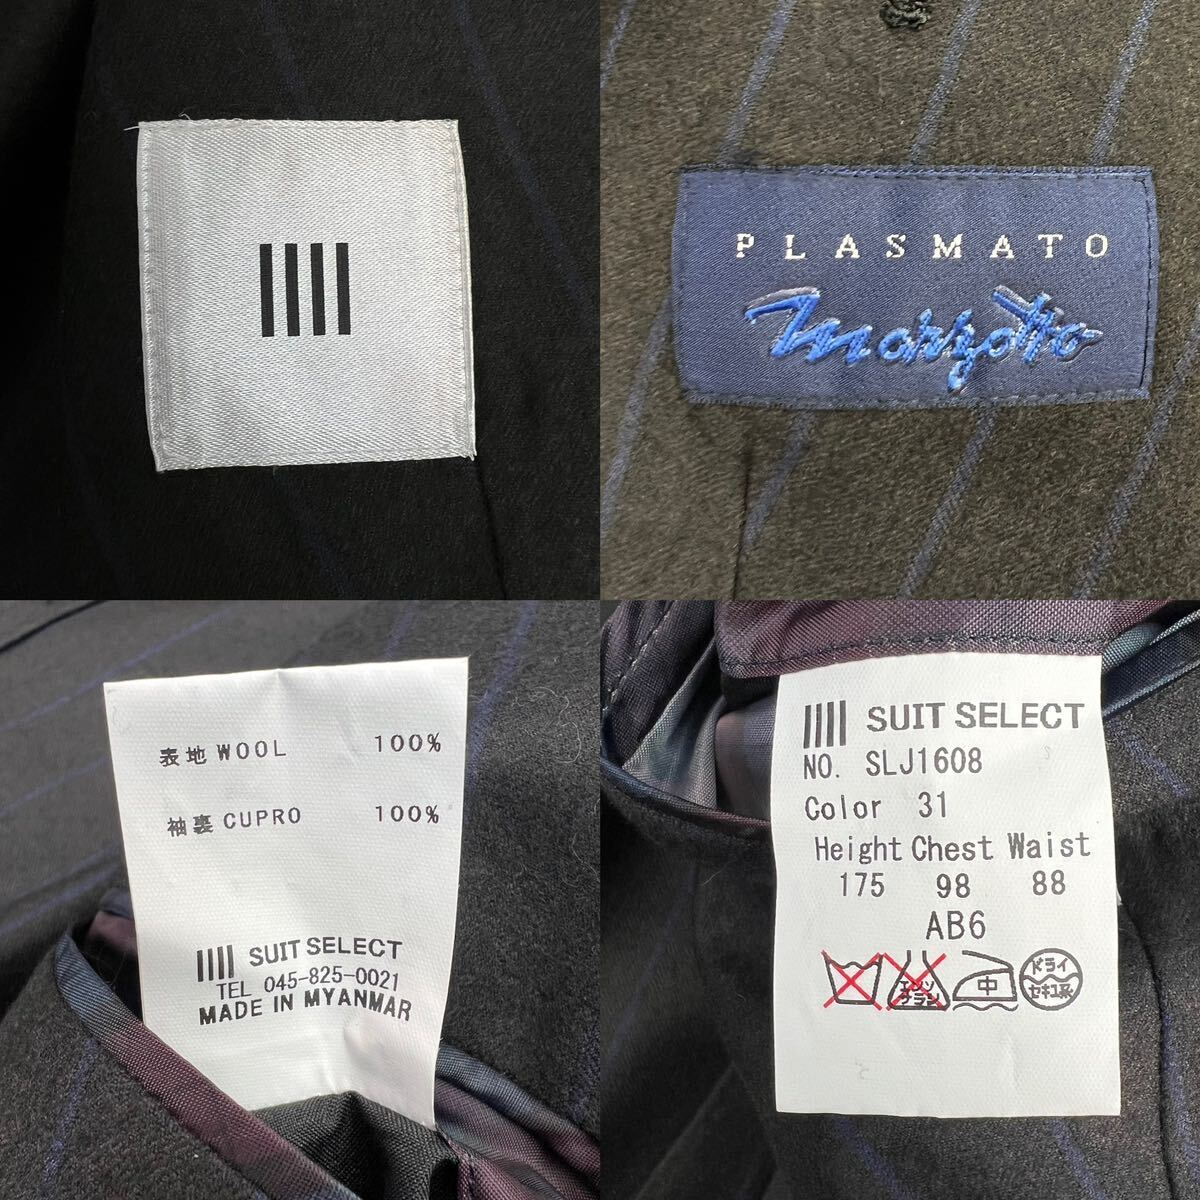  новый товар THE SUIT COMPANY×marzotto The костюм Company maru zoto двойной Puresuto костюм размер AB6/L-XL соответствует чёрный . близкий серый с биркой A2280